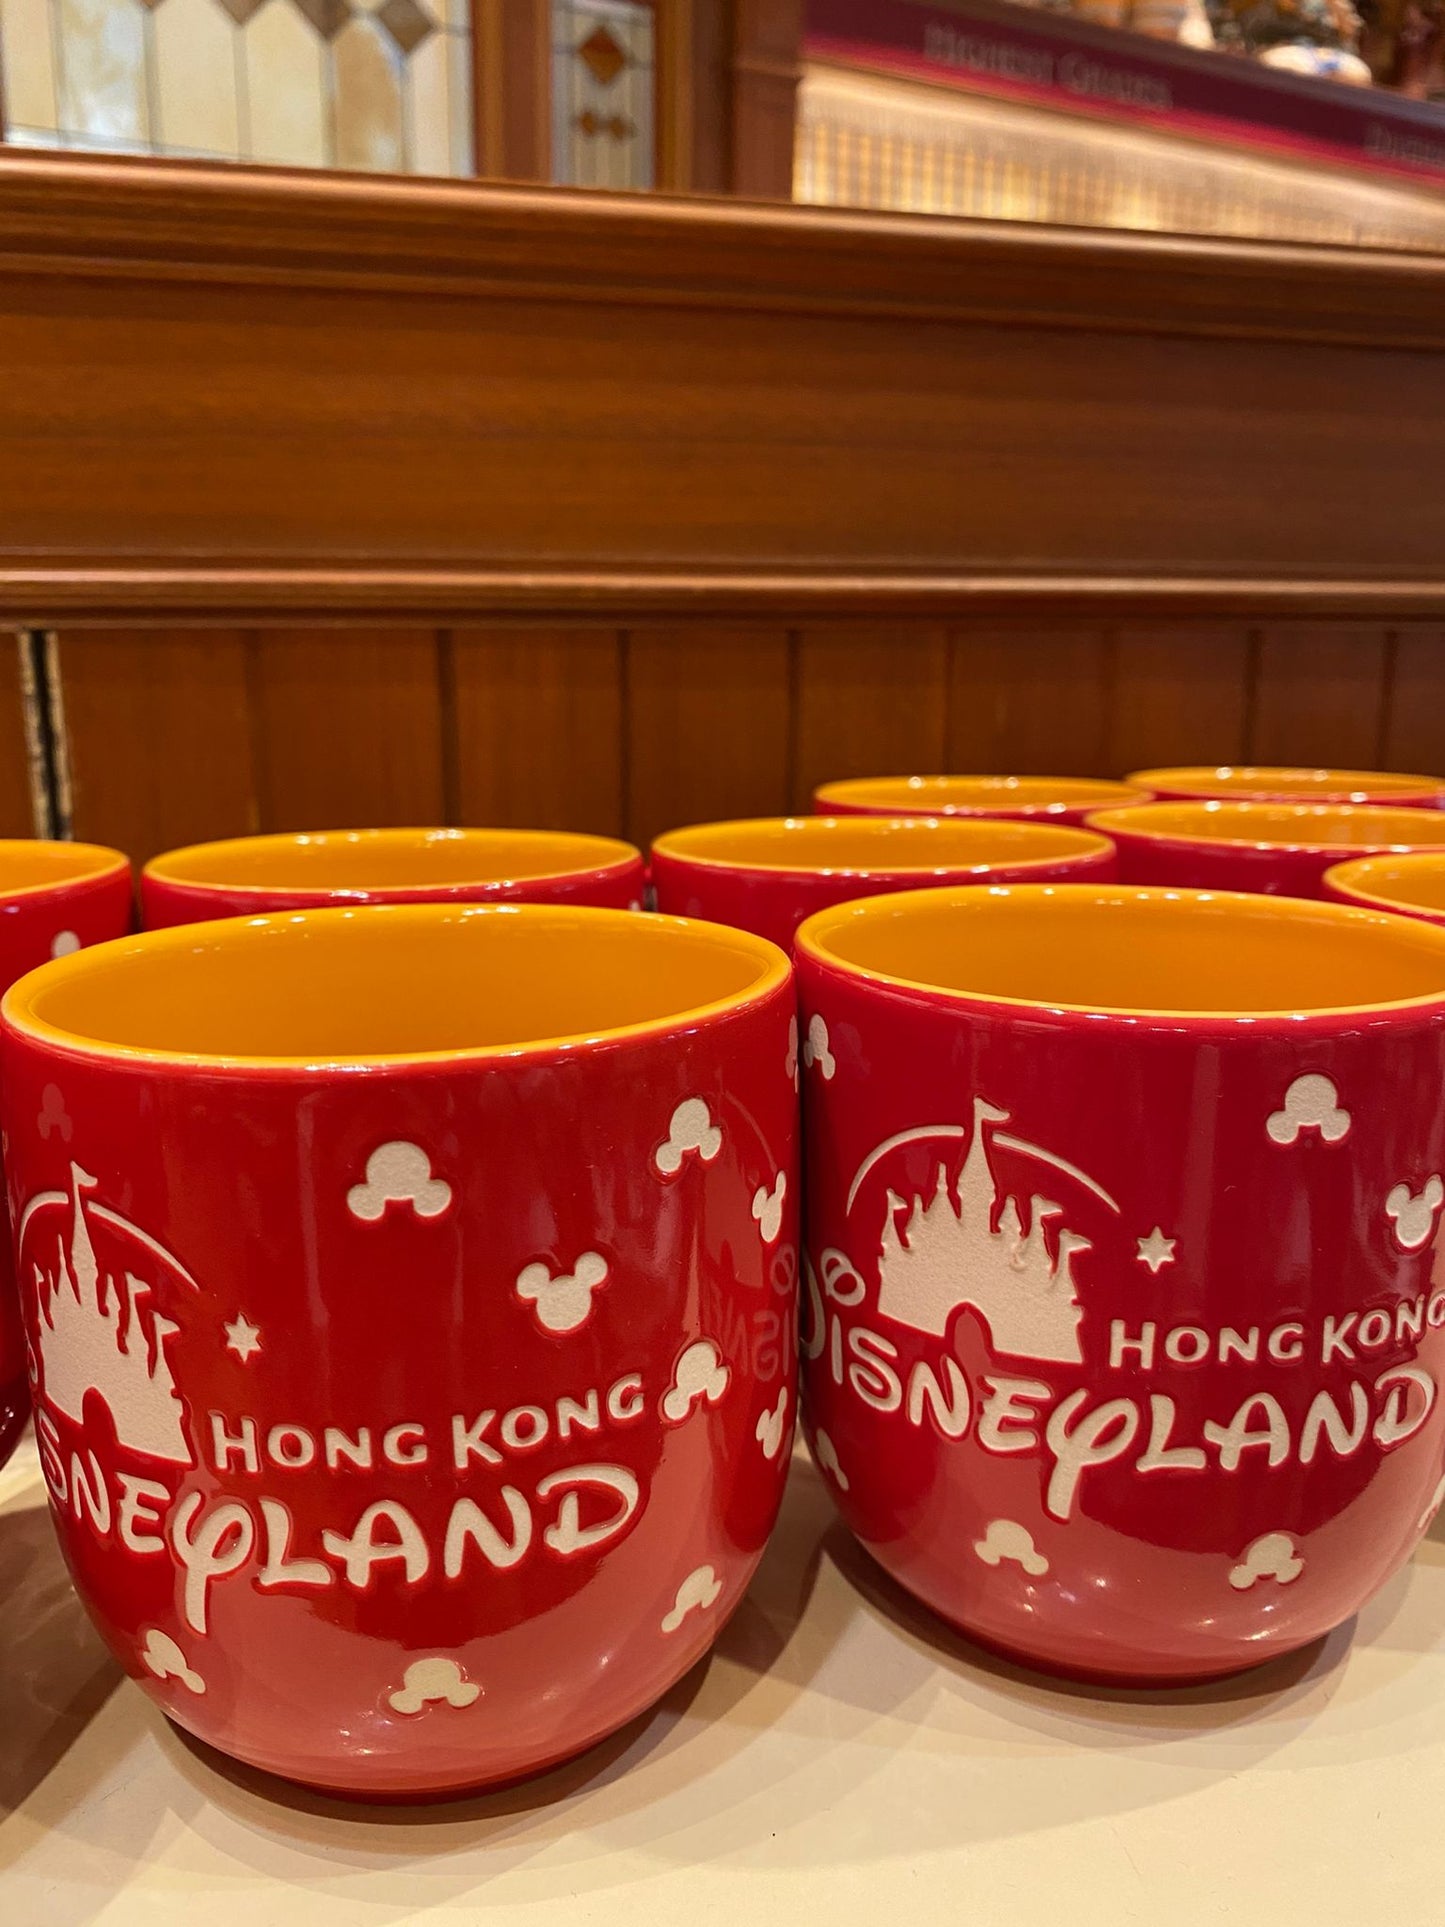 HKDL - Hong Kong Disneyland Mug